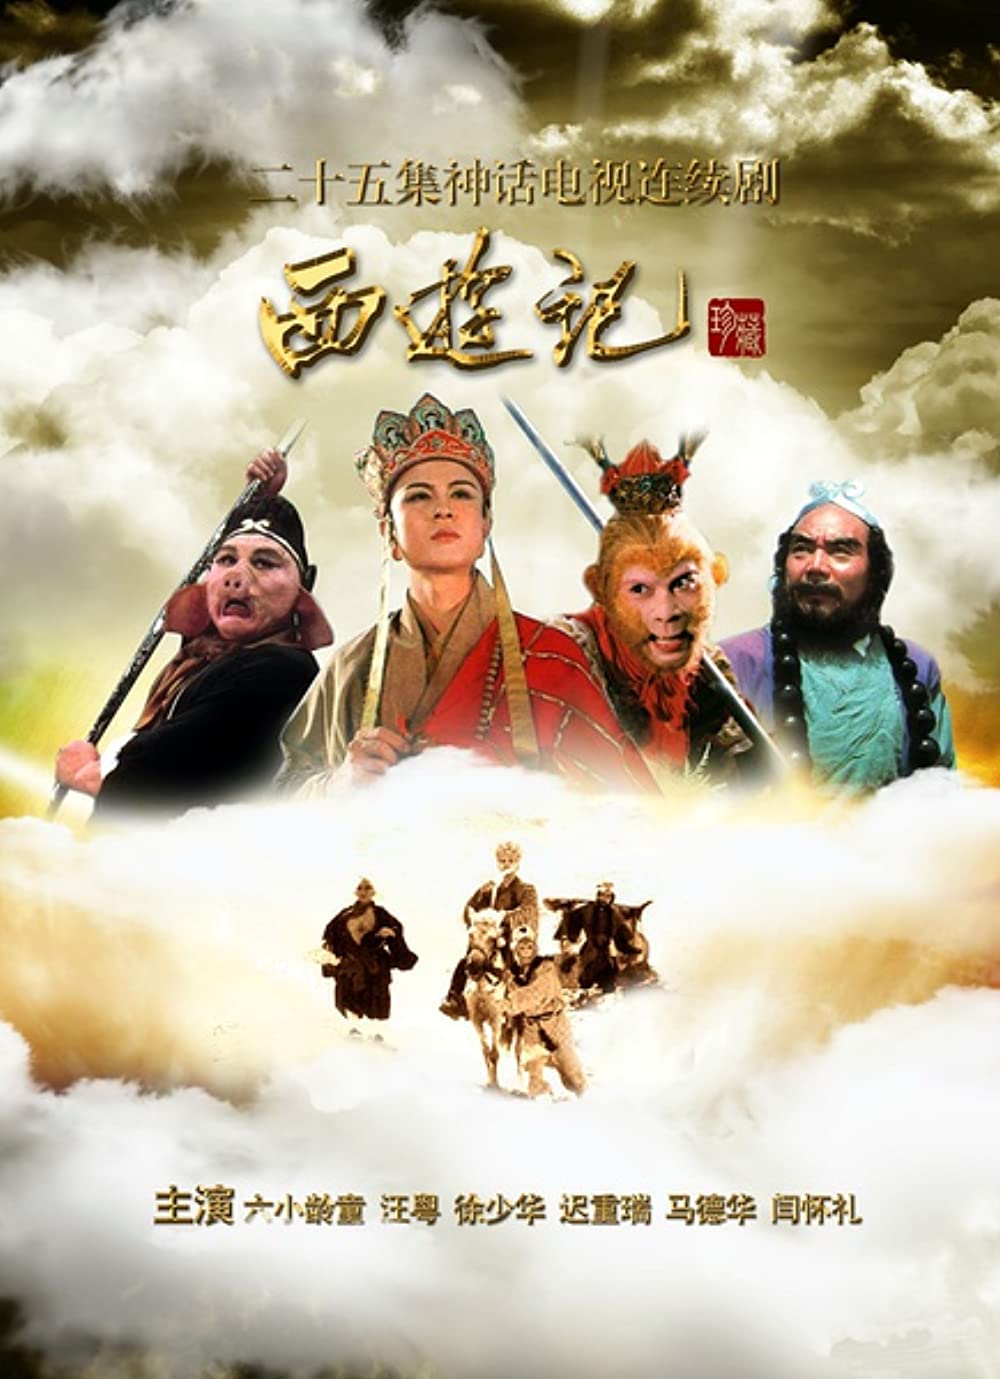 Nội dung phim: Journey to the West (1986 TV series) Tây du ký có nội dung dựa trên một câu chuyện có thật về nhà sư đời Đường Thái Tông tên là Huyền Trang, năm 21 tuổi đã một mình sang Ấn Độ để tìm thầy học đạo.